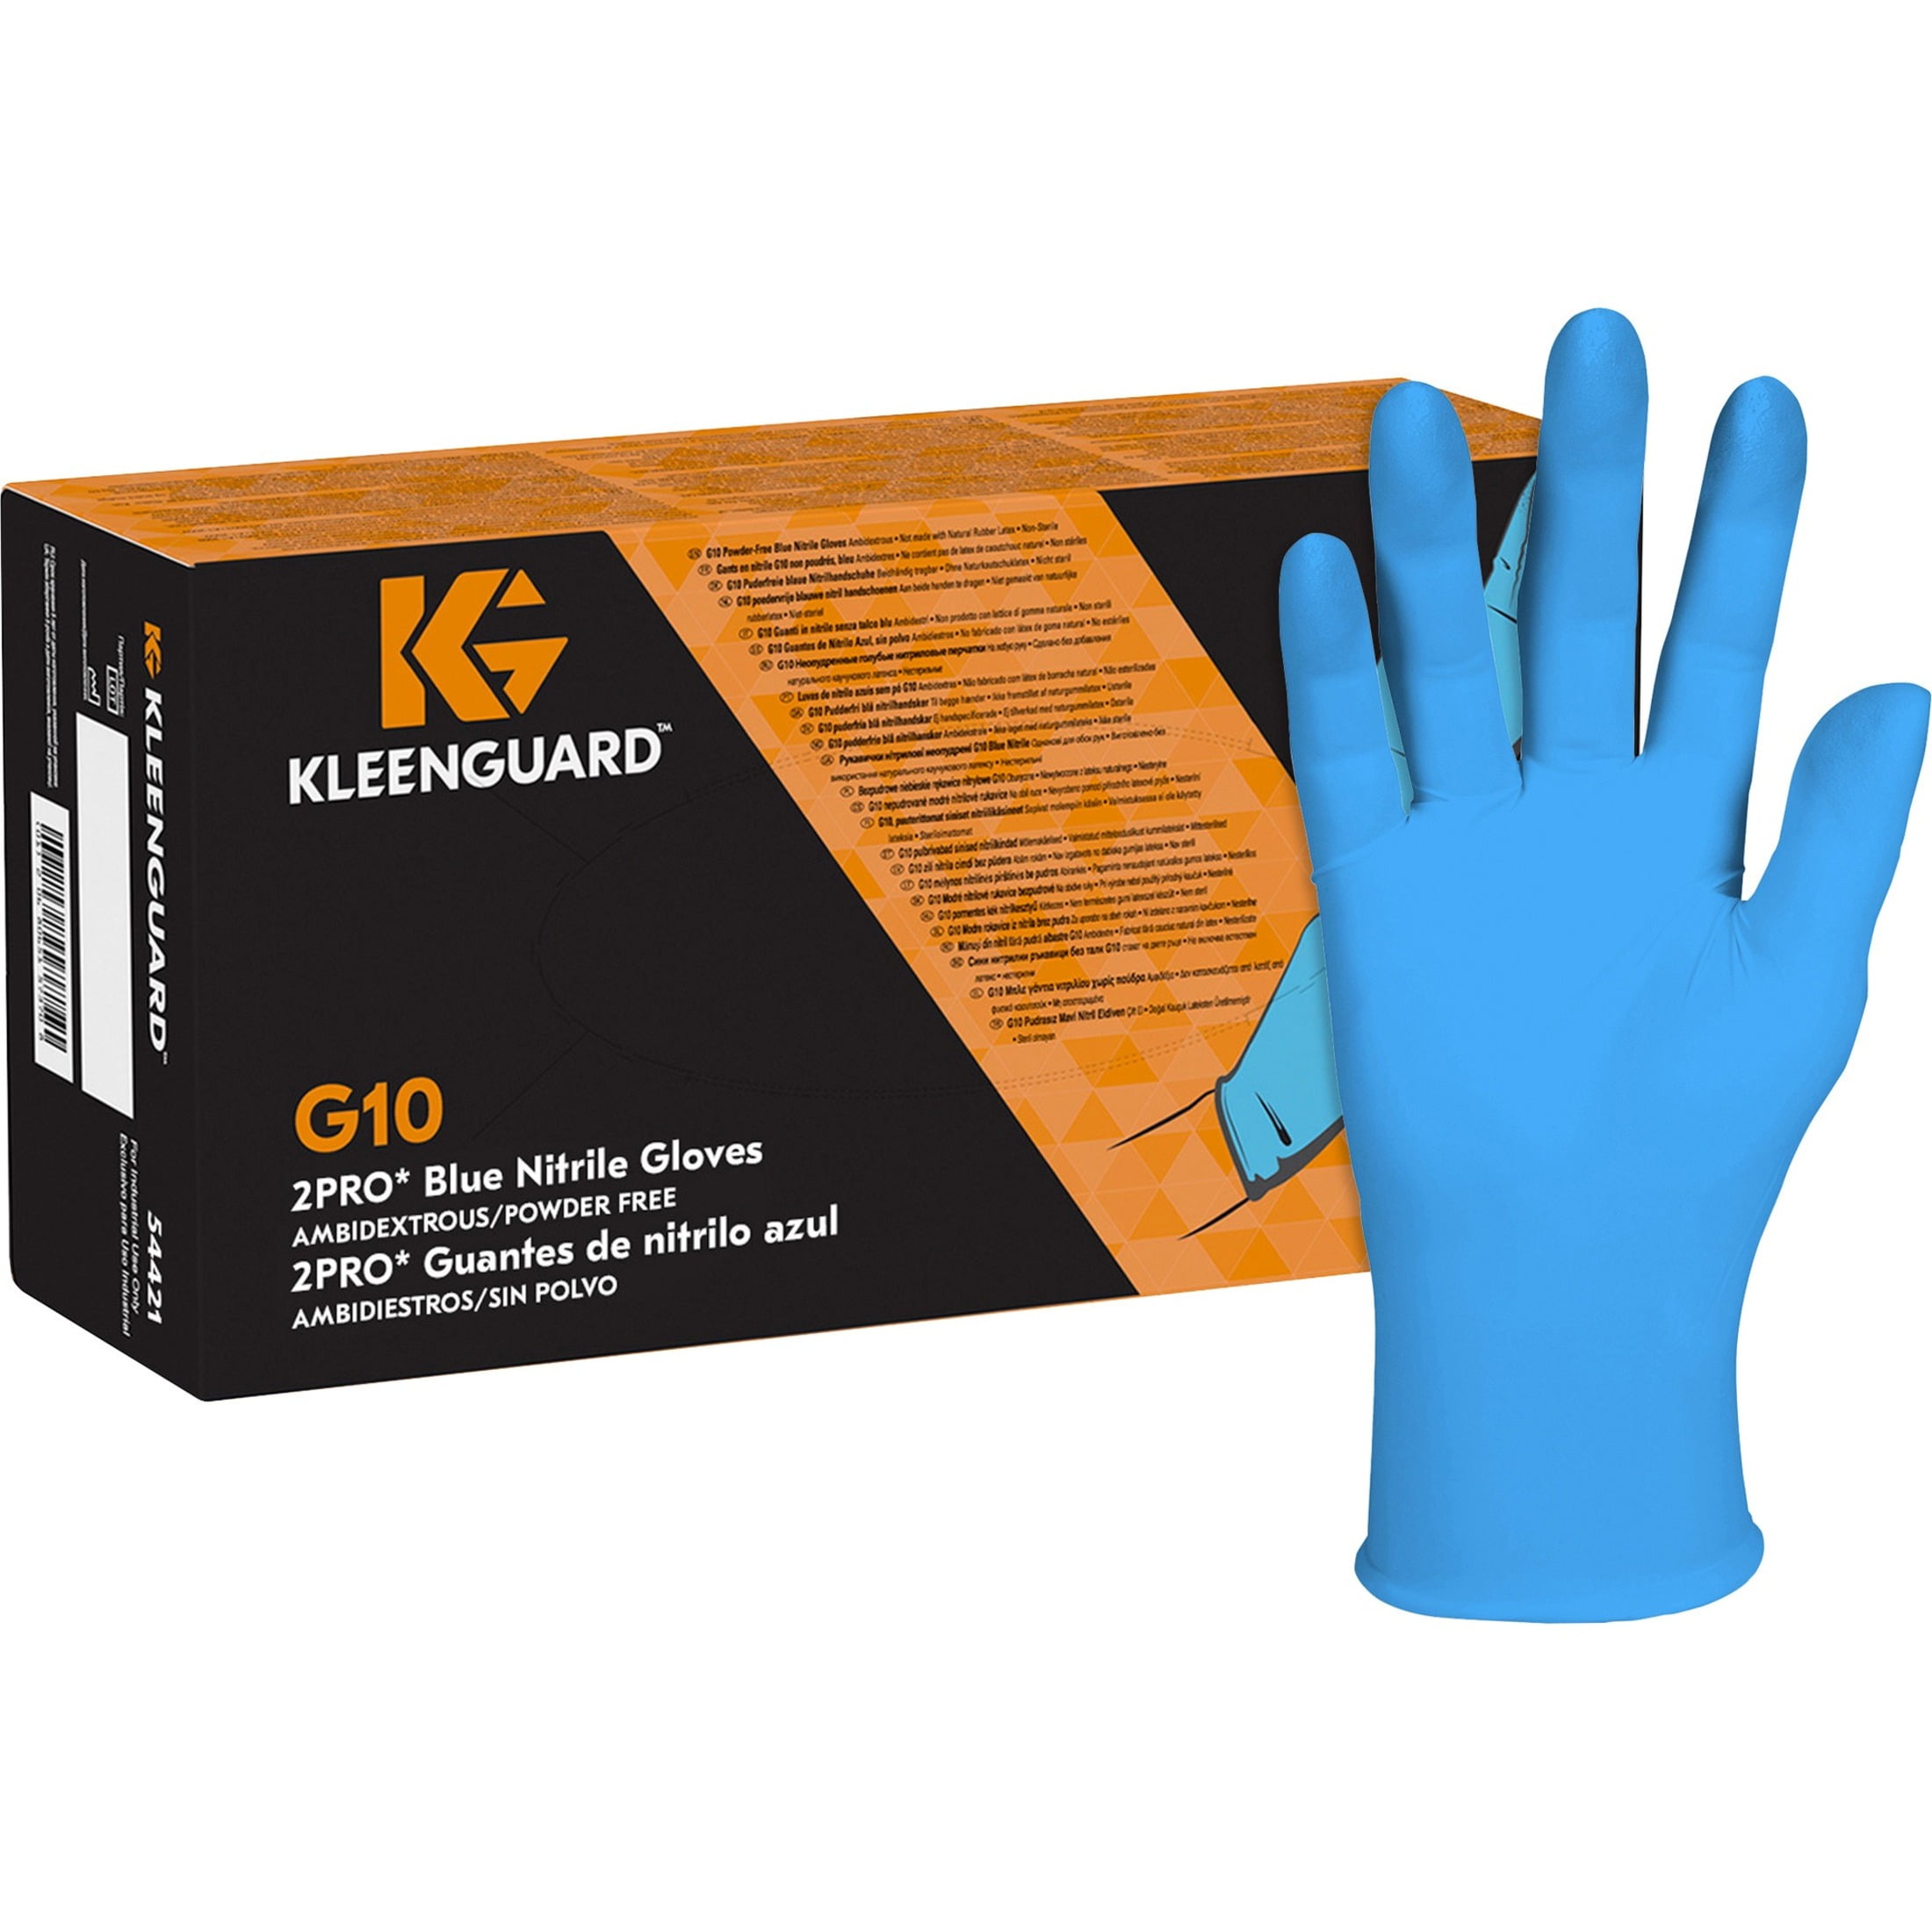 G10 Blue Nitrile Gloves - Walmart.com